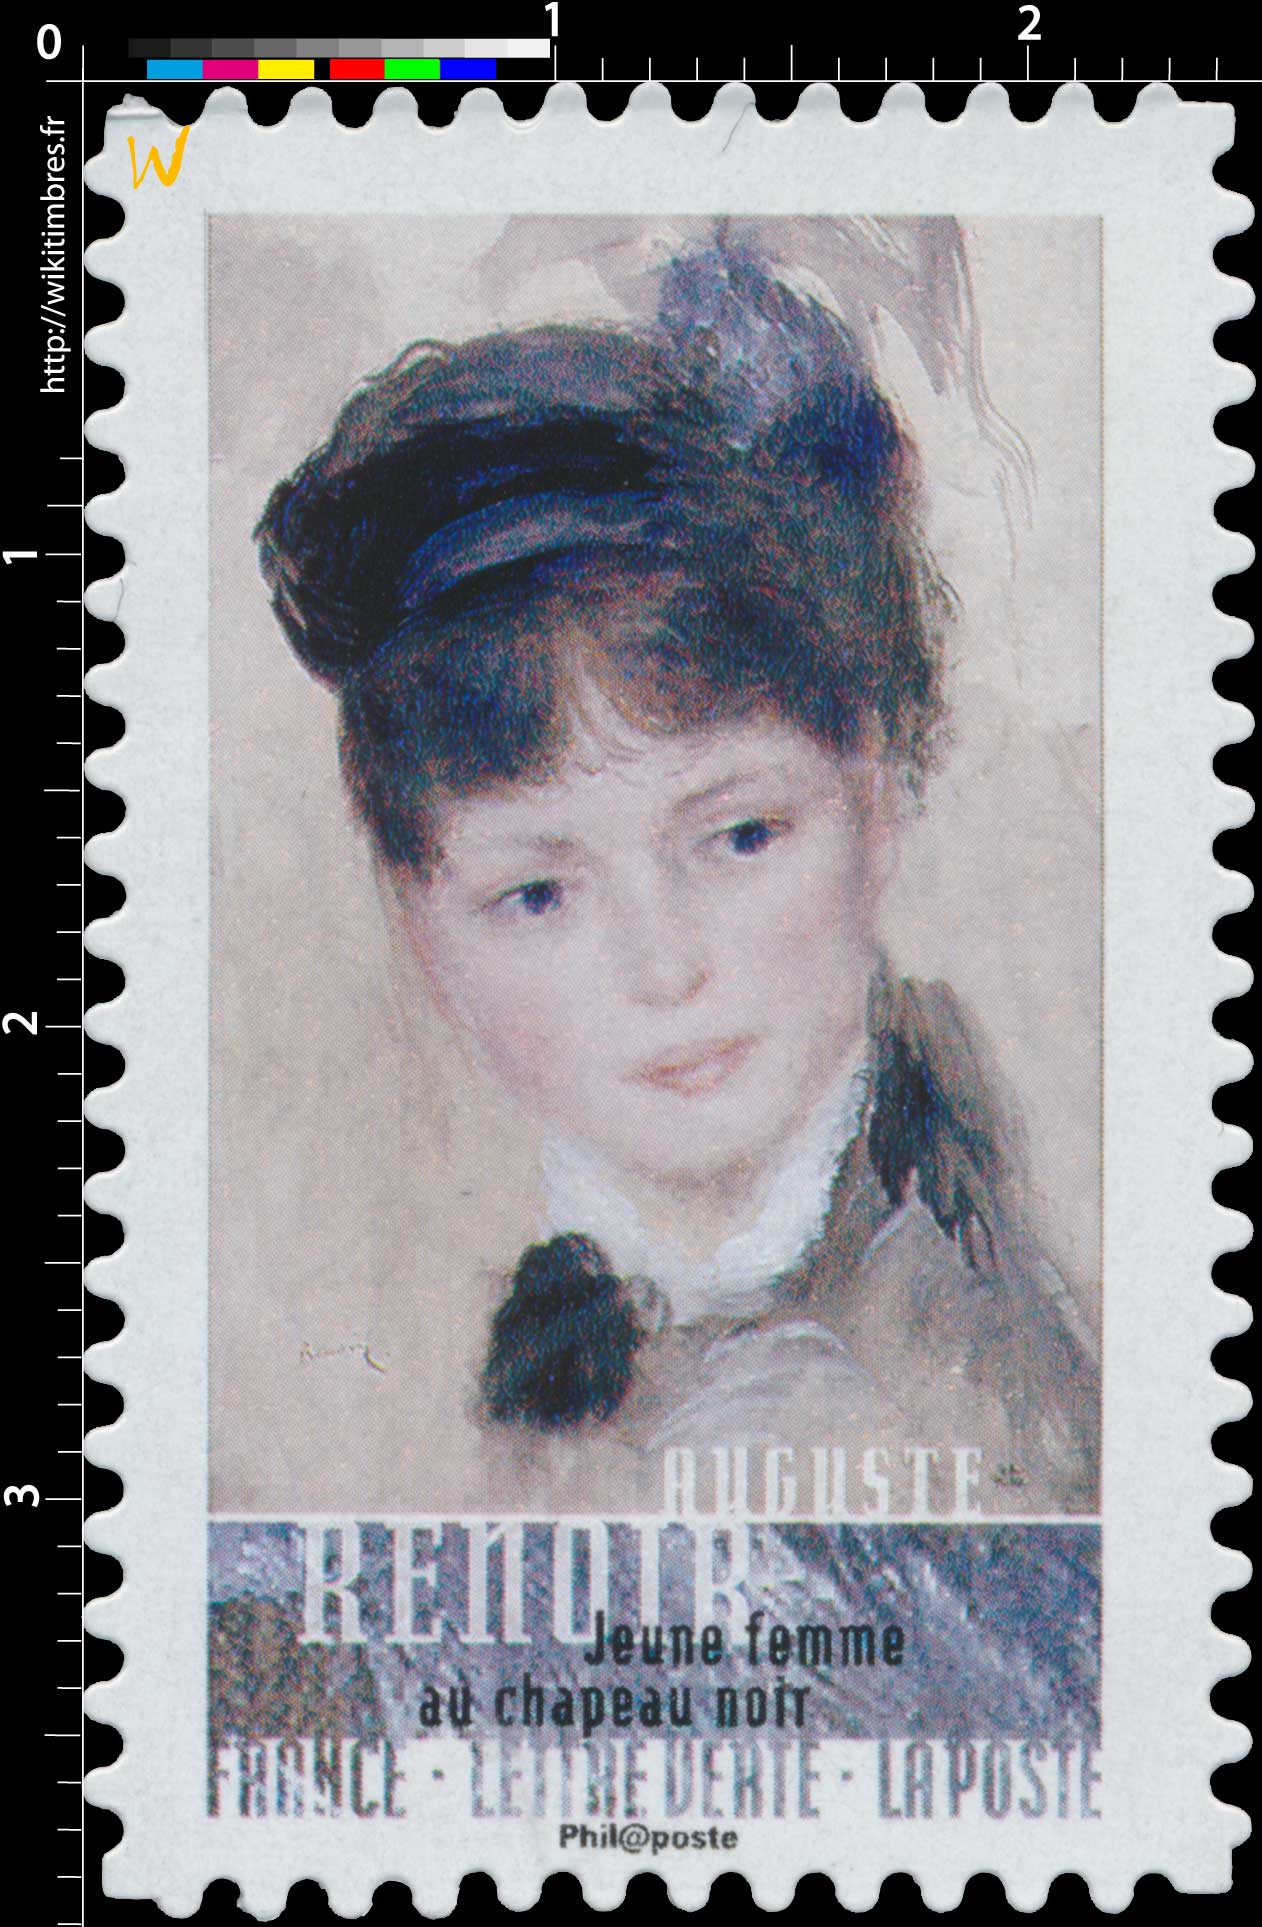 2016 Auguste Renoir - Jeune femme au chapeau noir